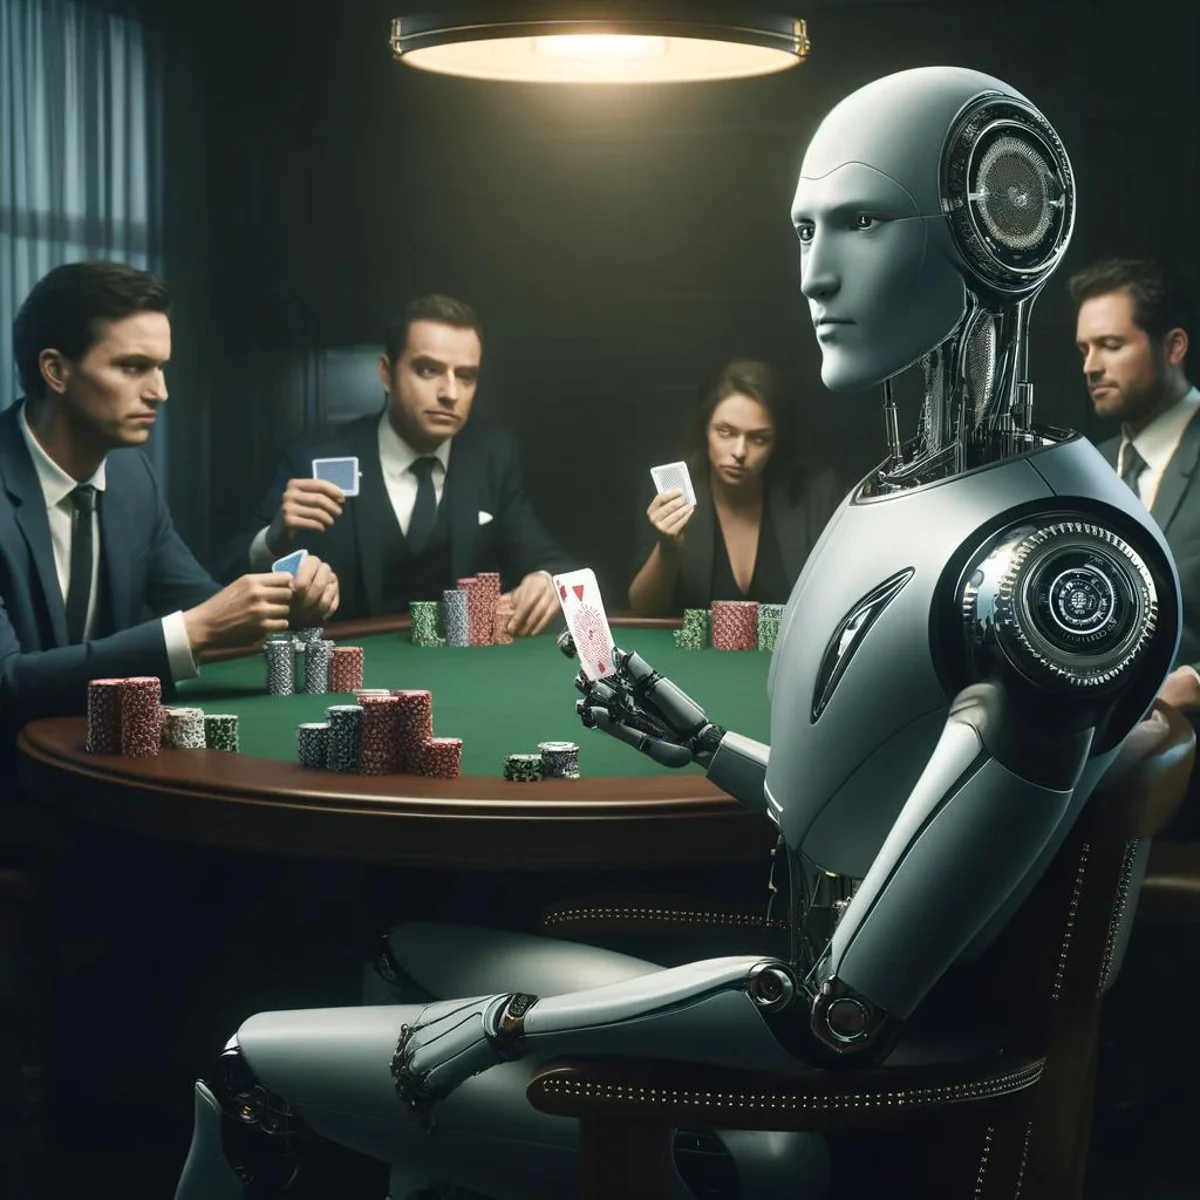 «Maestra del juego sucio»: la IA ya es capaz de engañar y manipular a los humanos